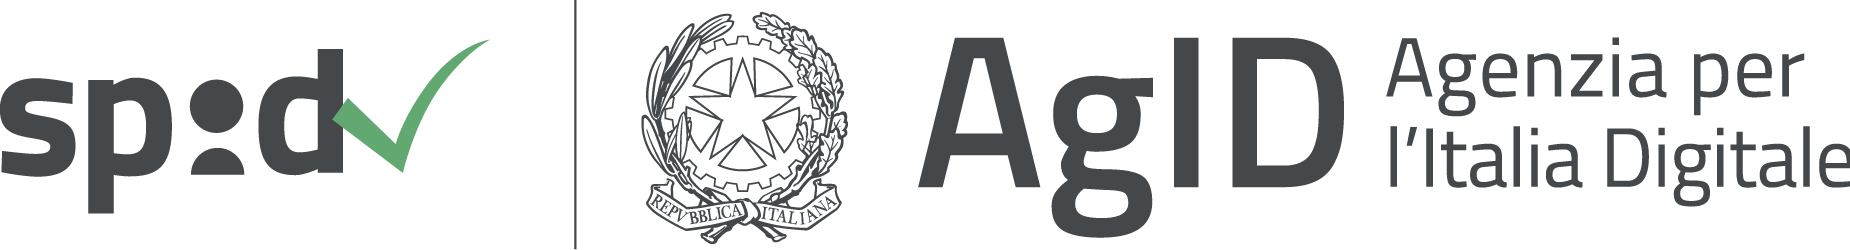 Logo SPID e Agenzia per l'Italia Digitale